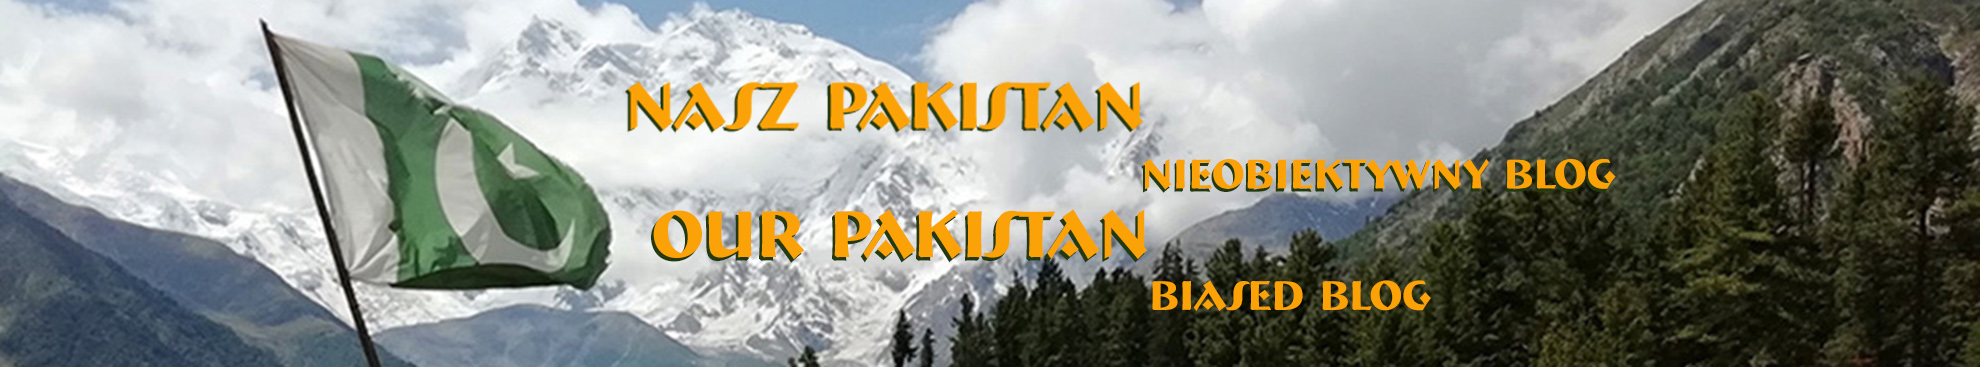 Nasz Pakistan - blog stronniczy